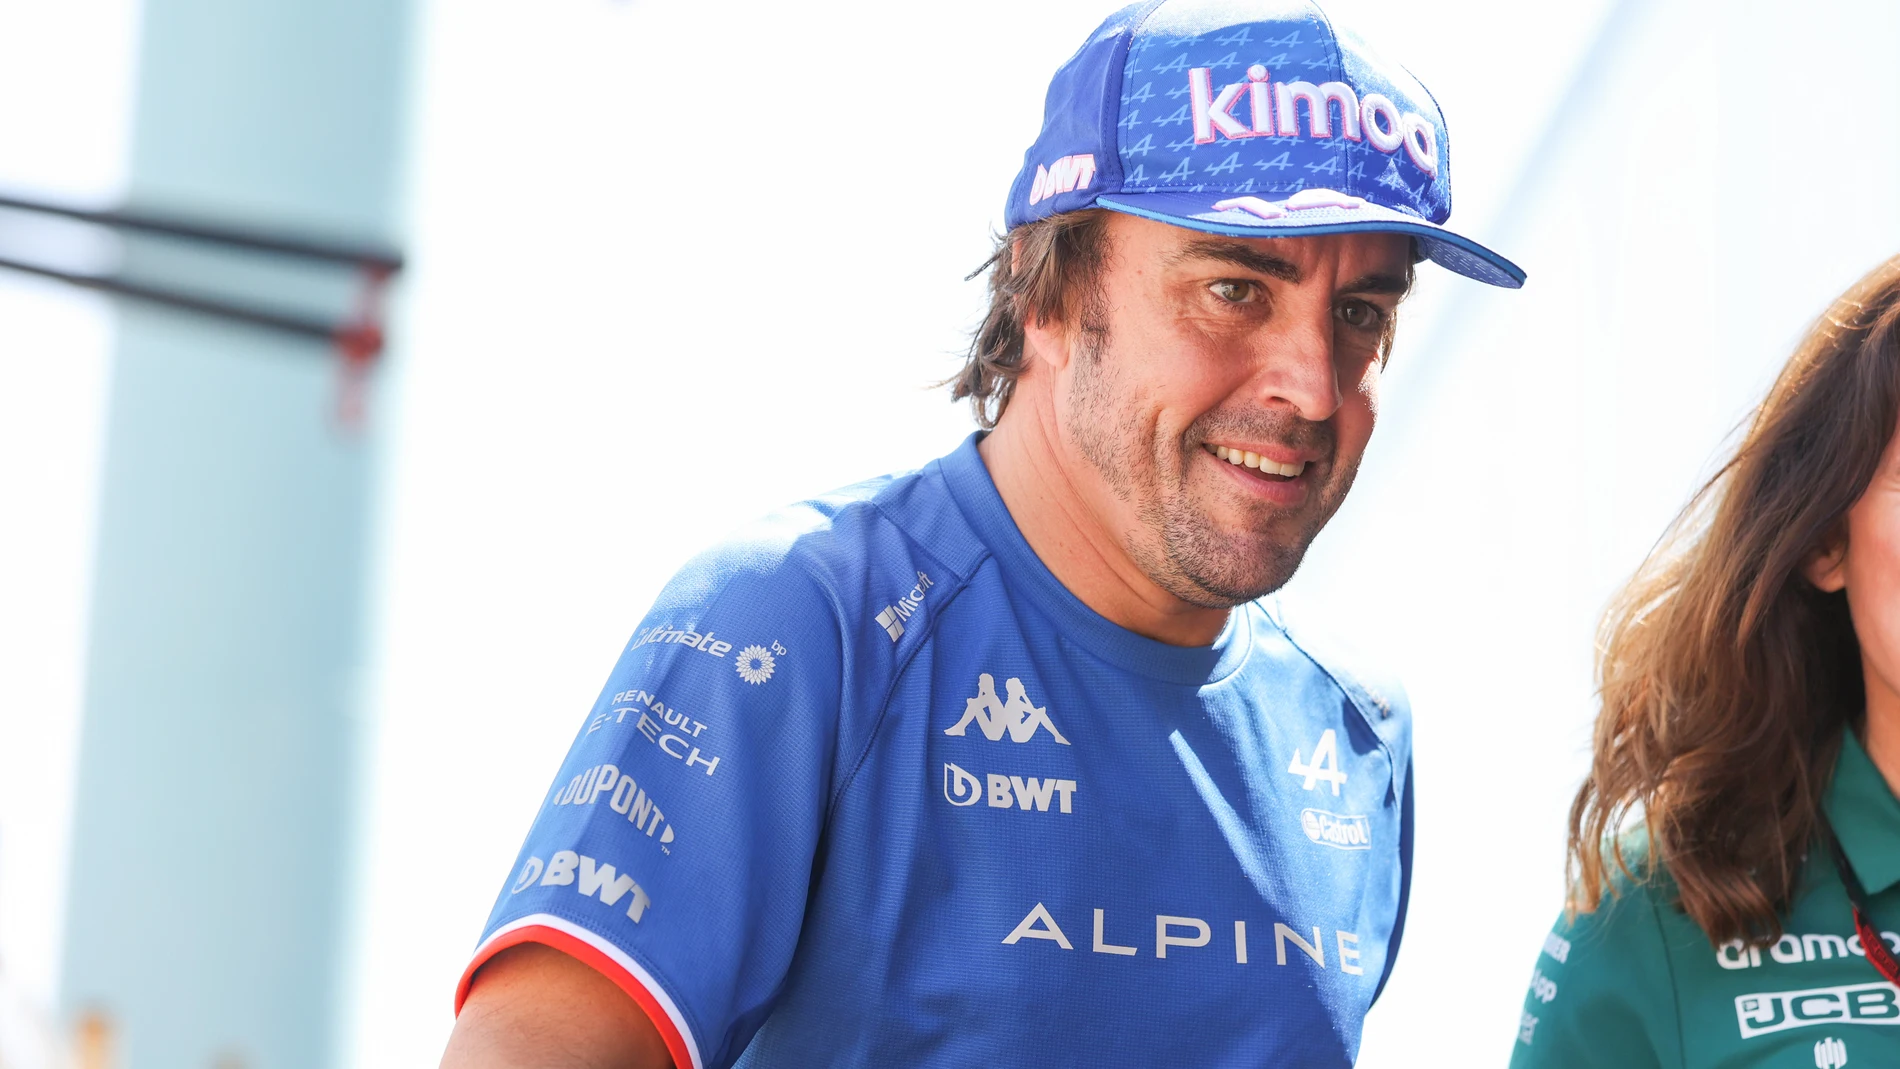 Camiseta del equipo de Fernando Alonso 2021 - Alpine F1